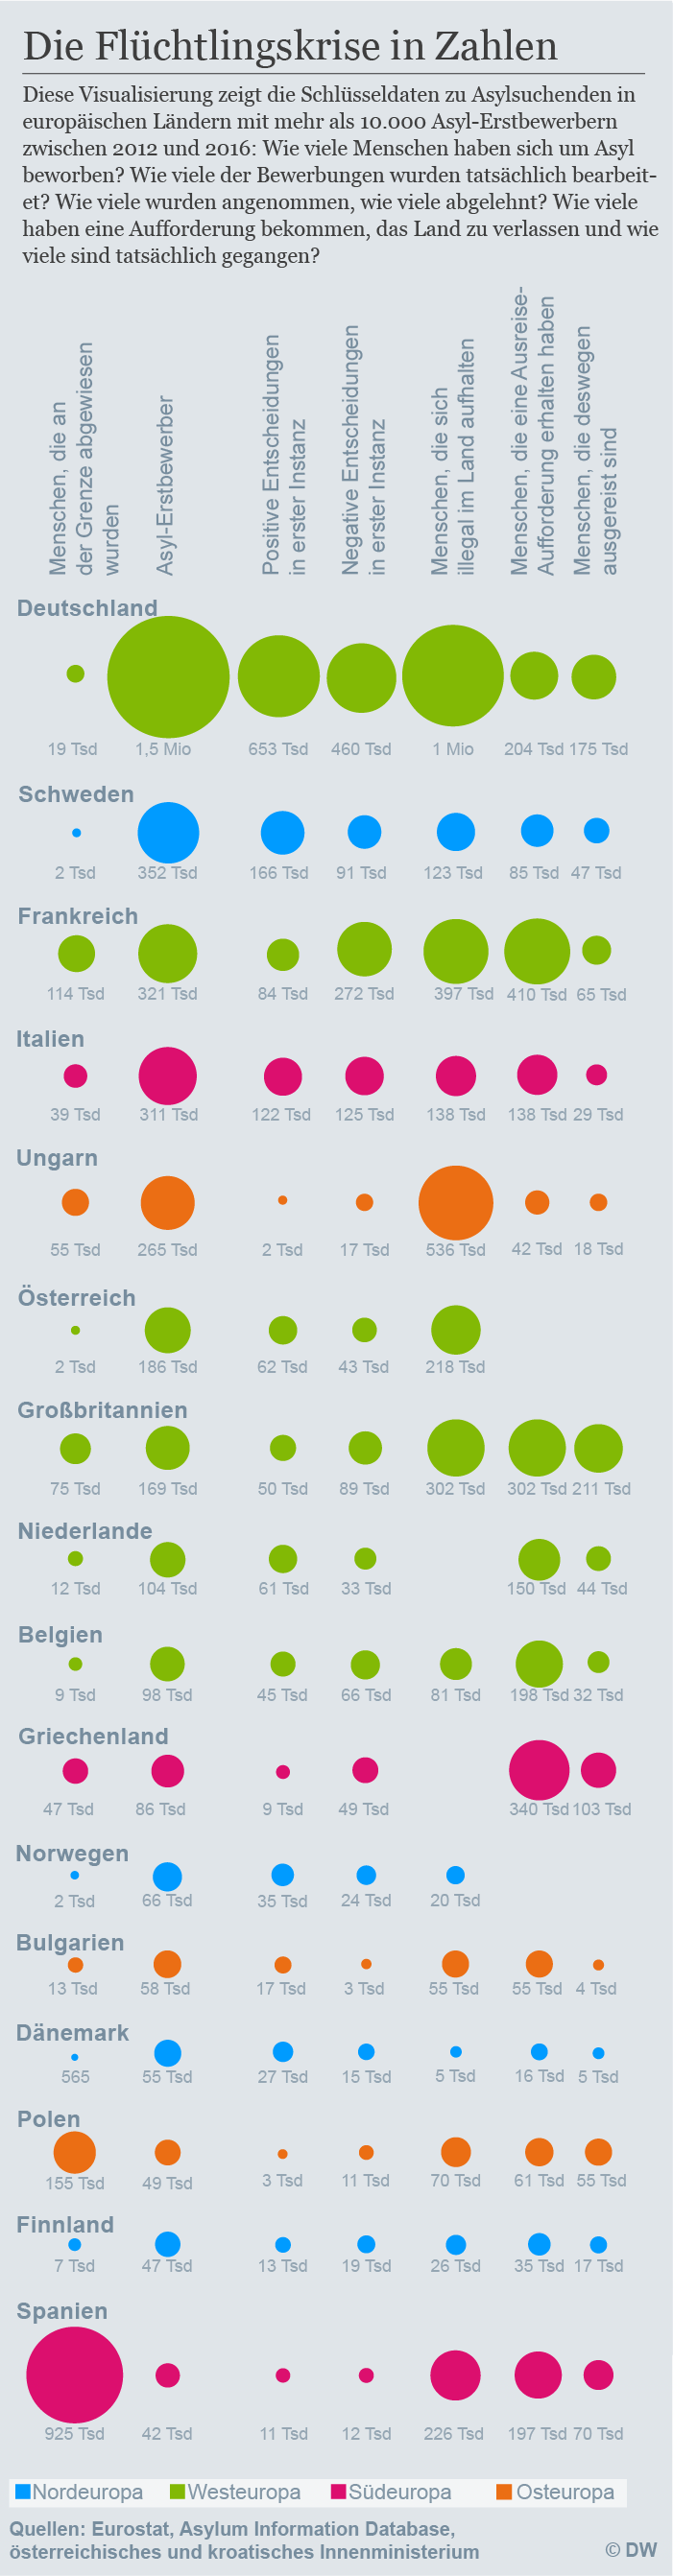 Infografik Die Flüchtlingskrise in Zahlen Mobil DEU